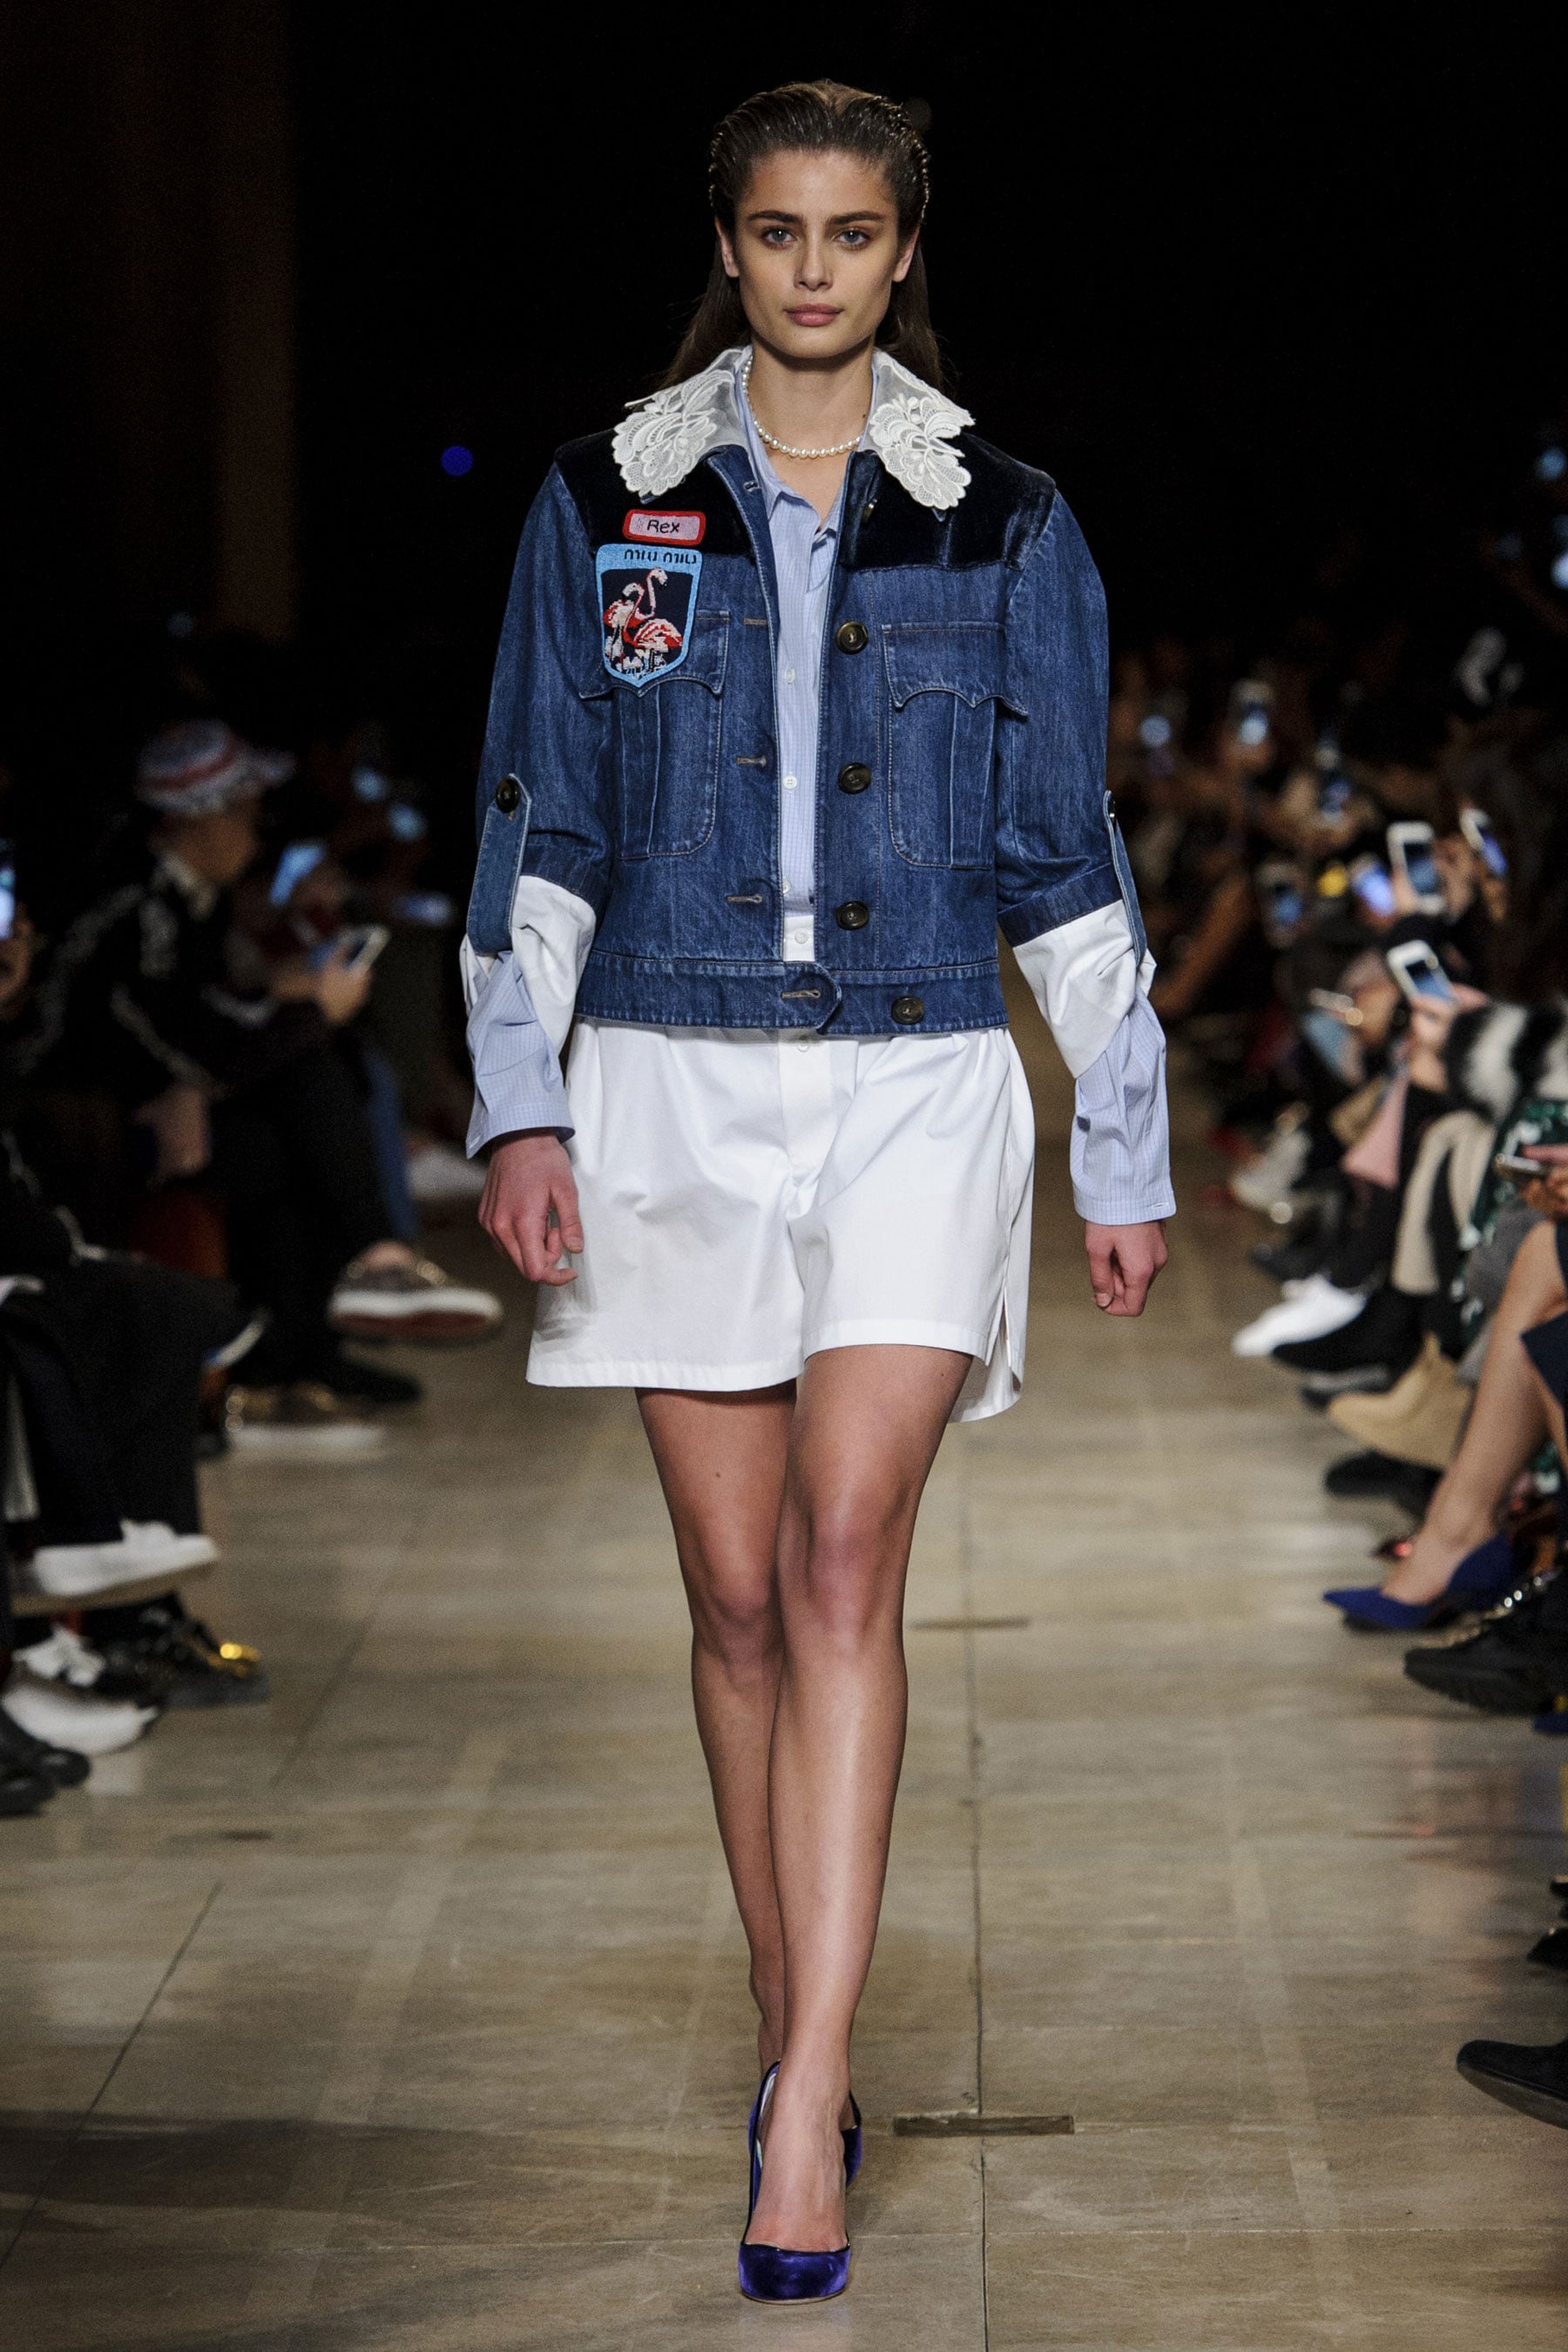 Style inspiration: Léa Seydoux + 5 fall fashion trends